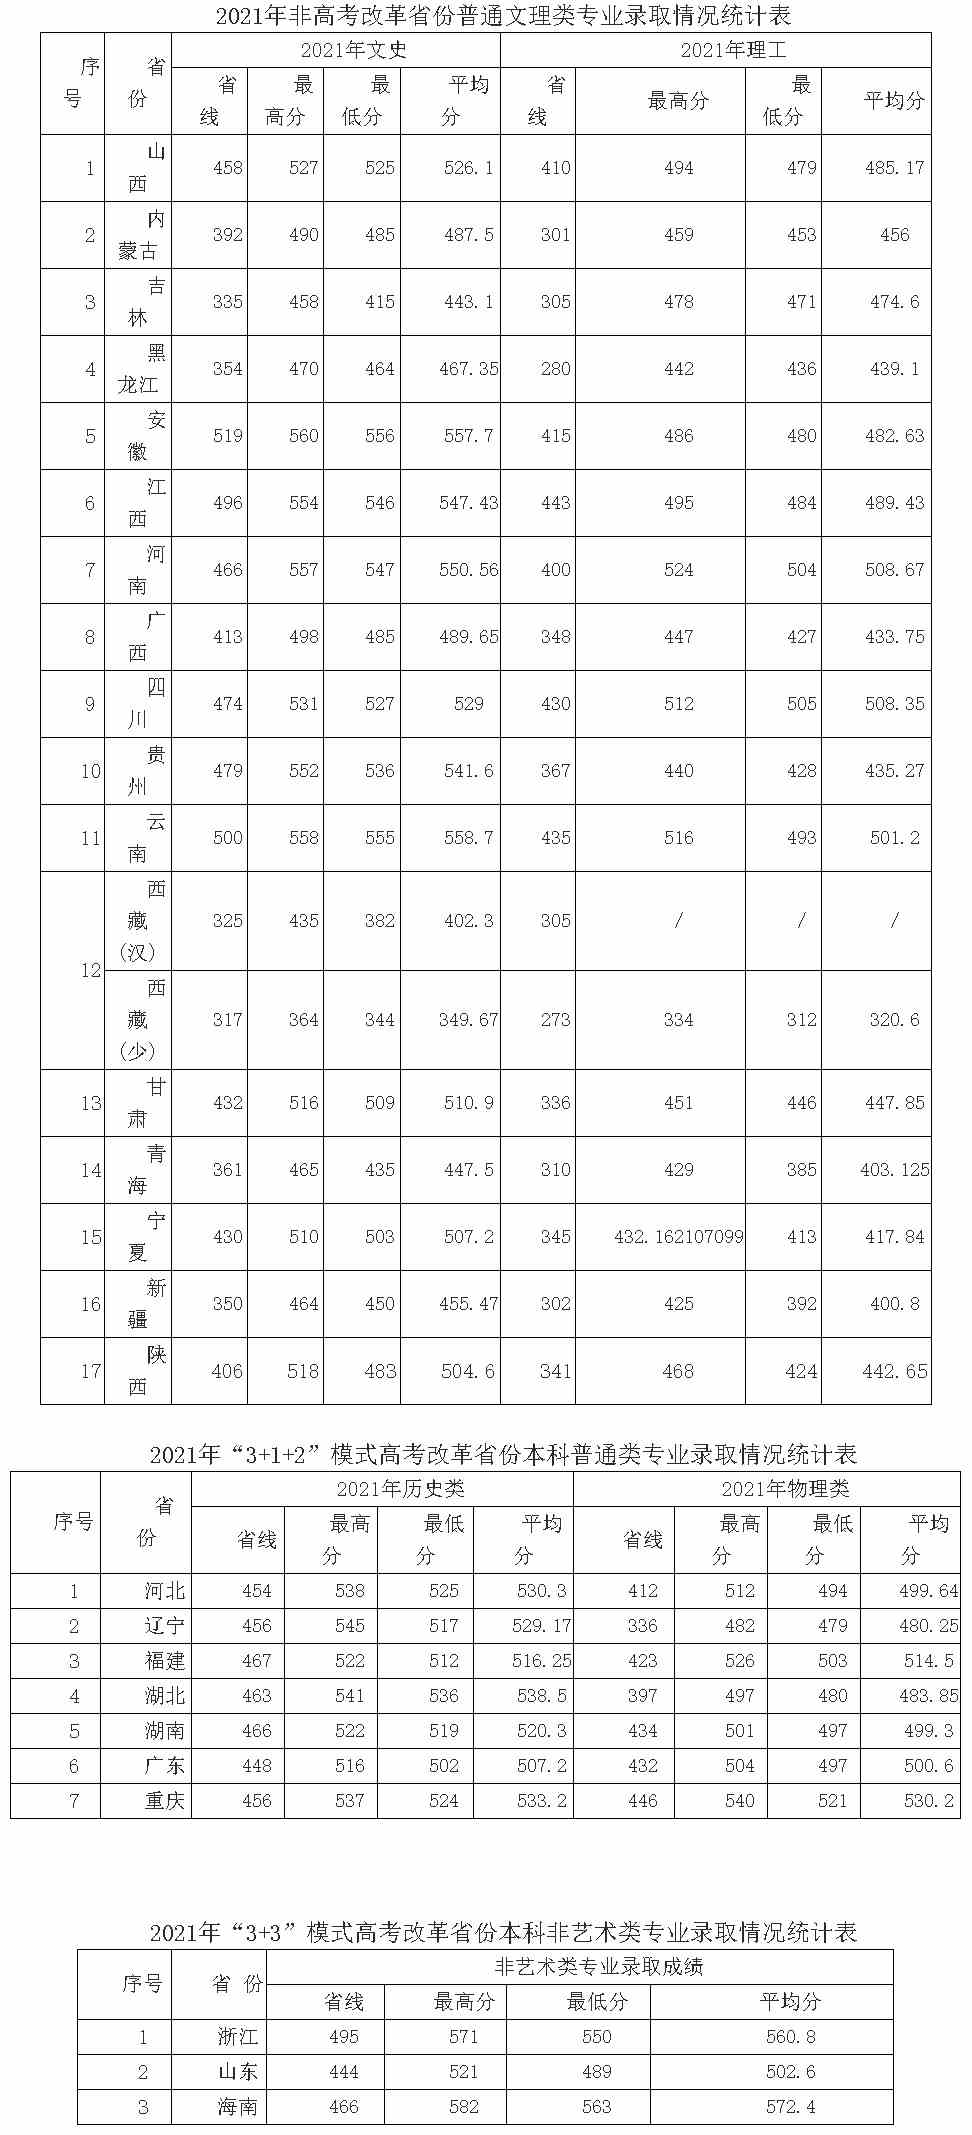 咸阳师范学院2021年普通文理各省招生情况统计表.jpg